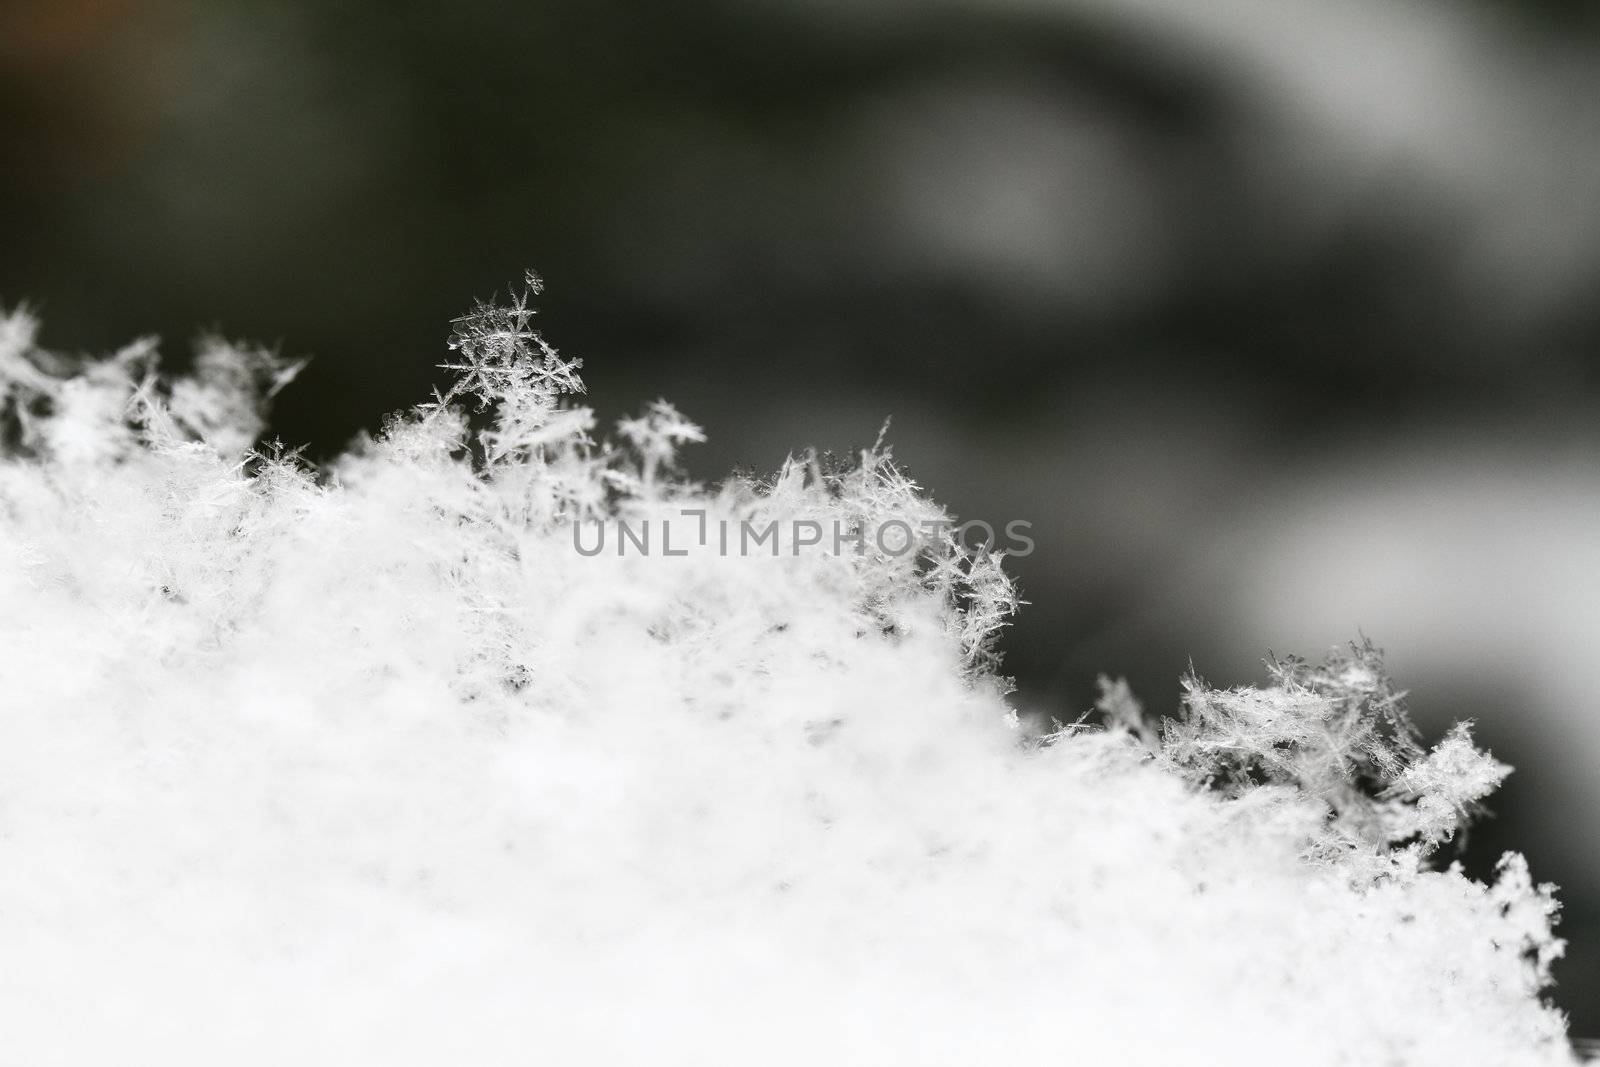 Snowflake in white snow by Nneirda